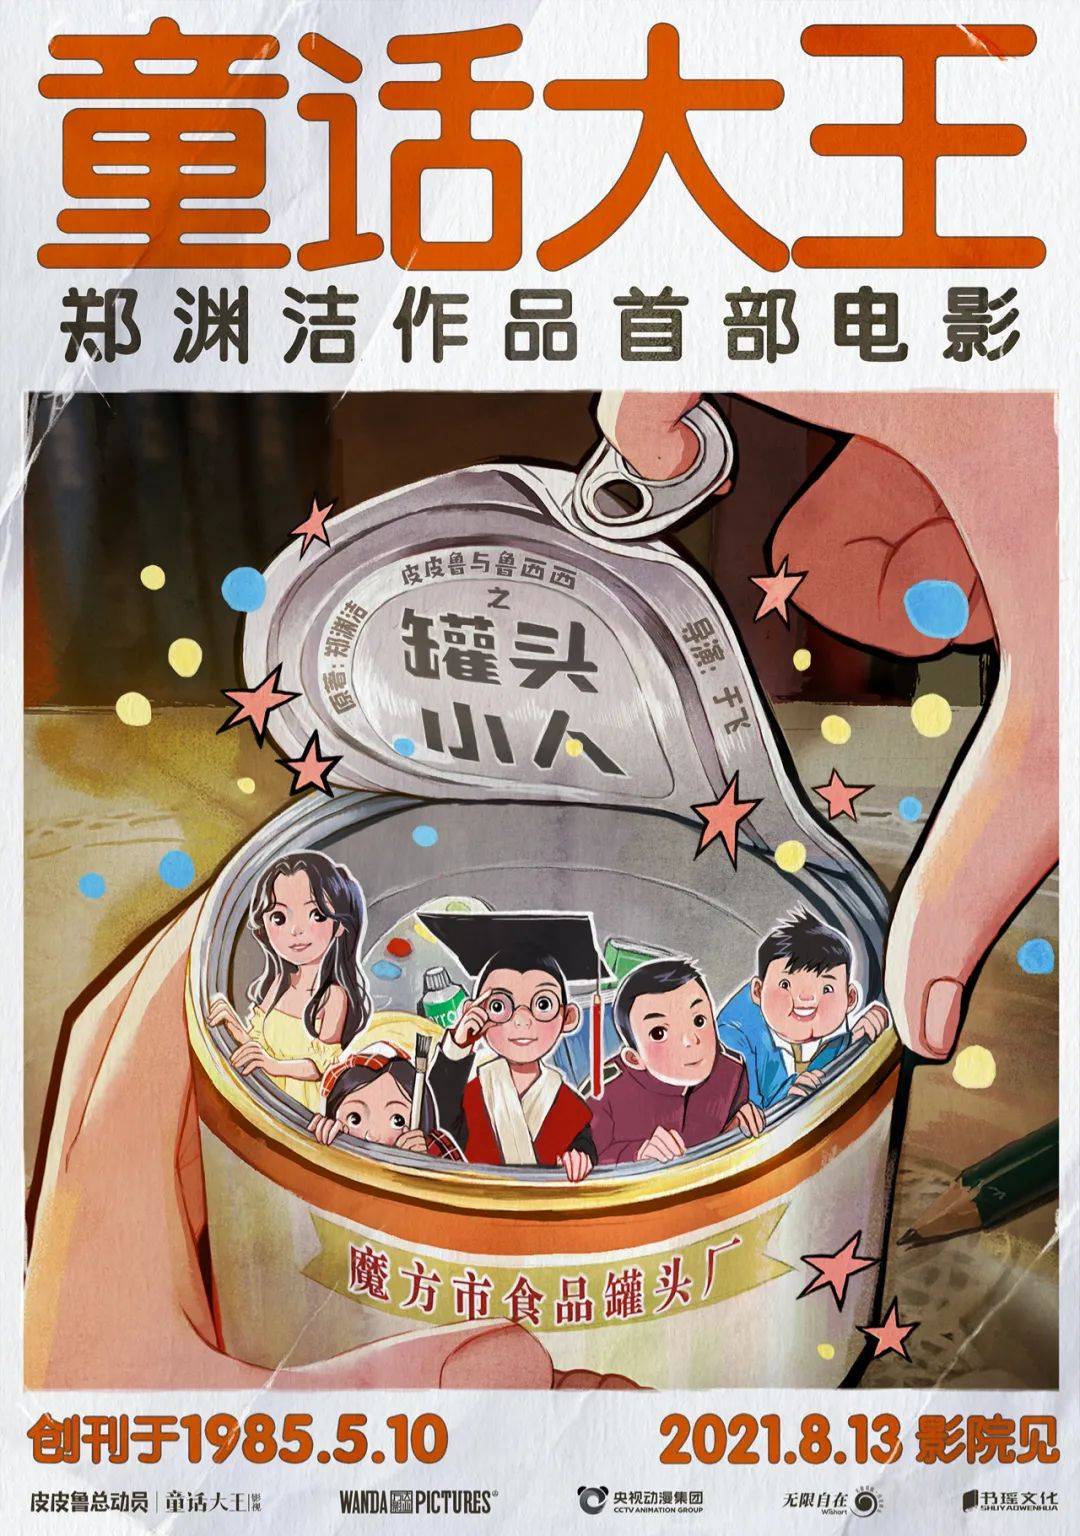 郑渊洁作品首部真人电影 皮皮鲁与鲁西西之罐头小人 将于8月上映 童话